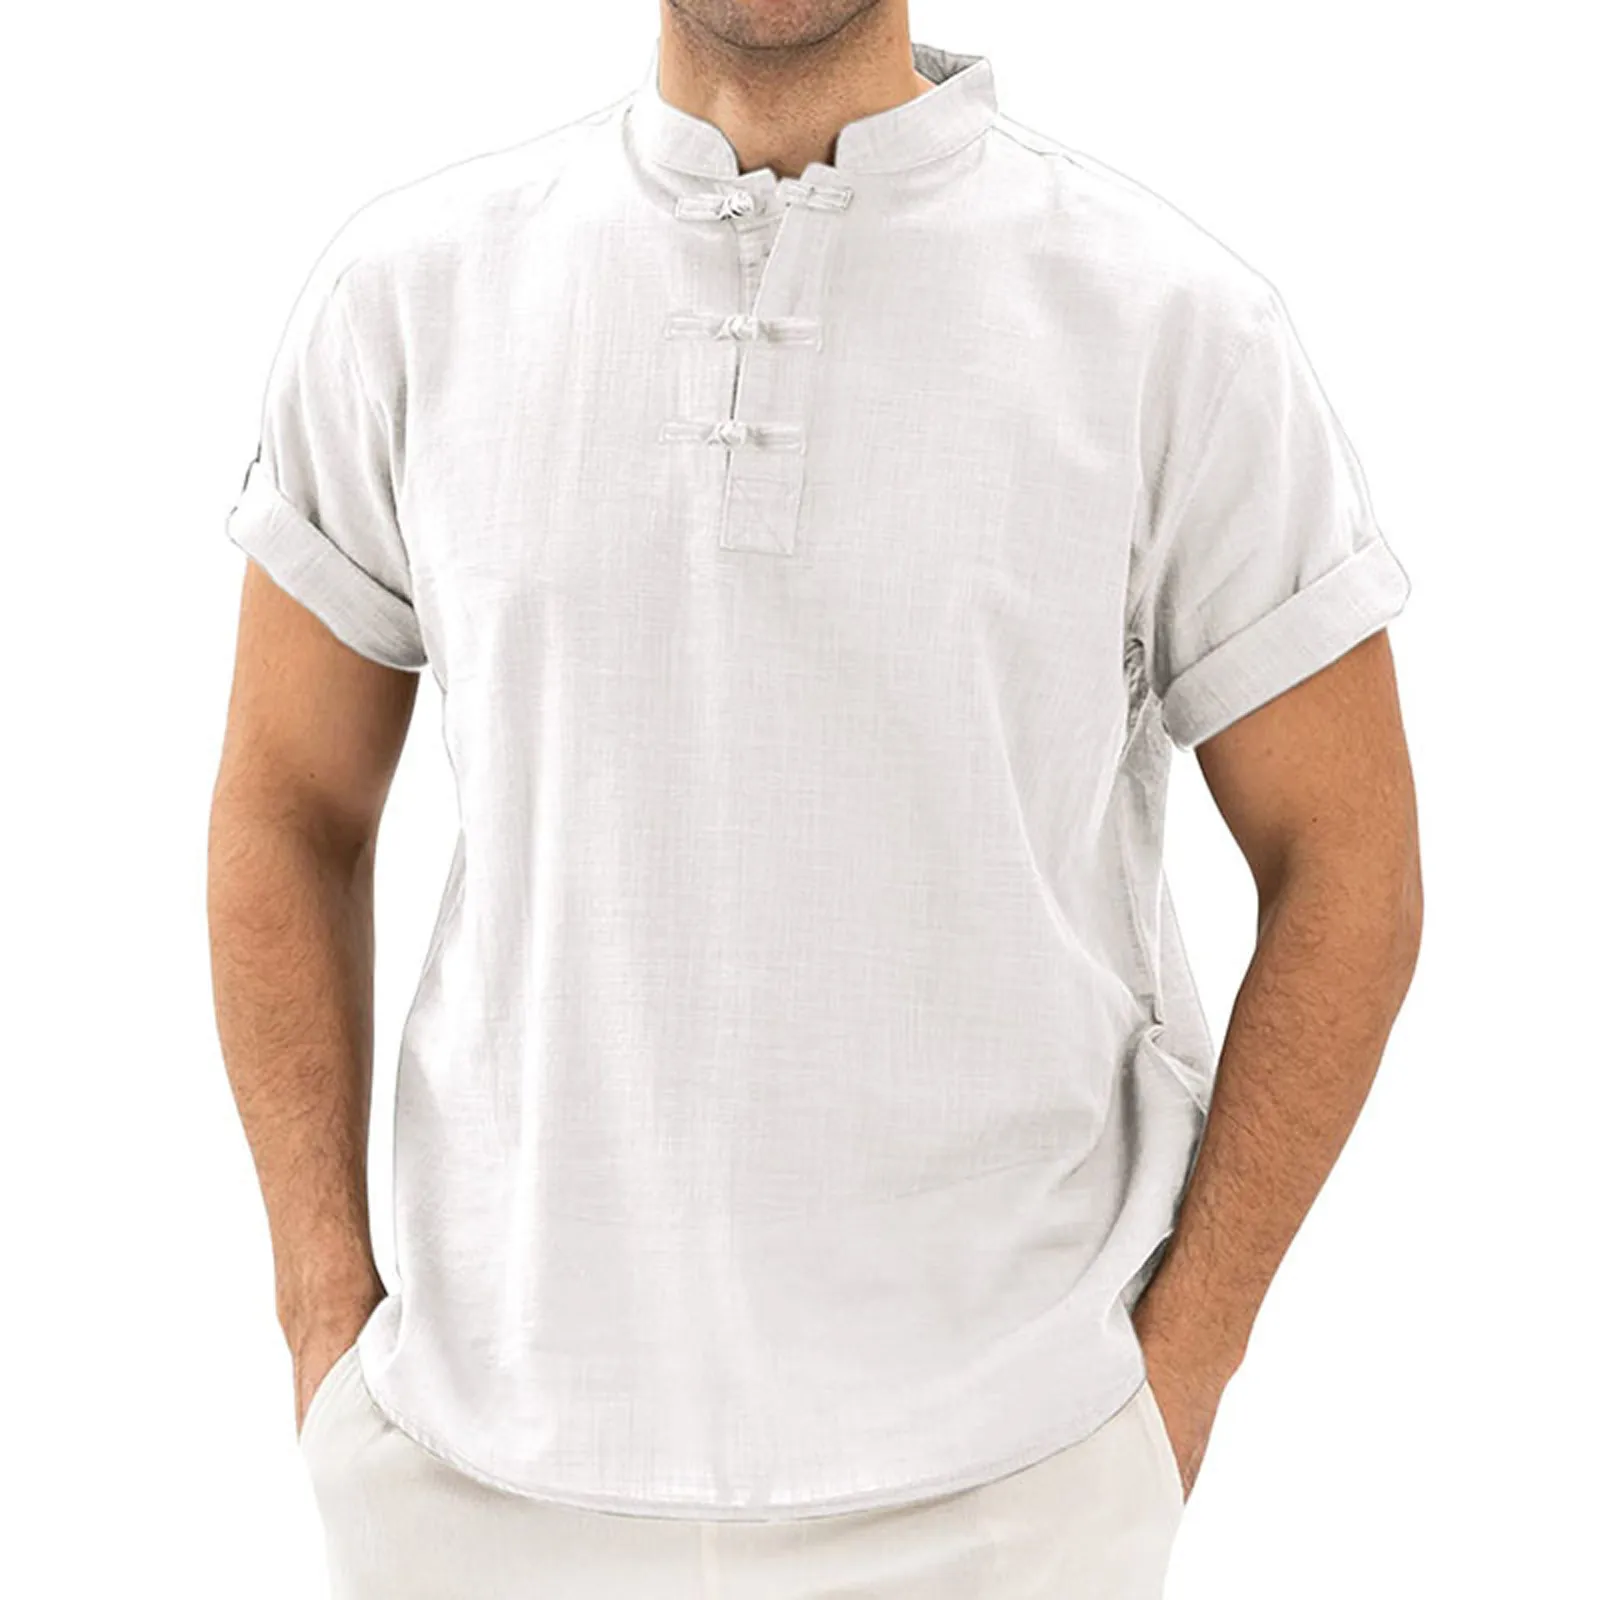 Details about   Vintage Men's Cotton Linen Loose T Shirt Tops Hoodie Retro Beach Tops Blouse UK 